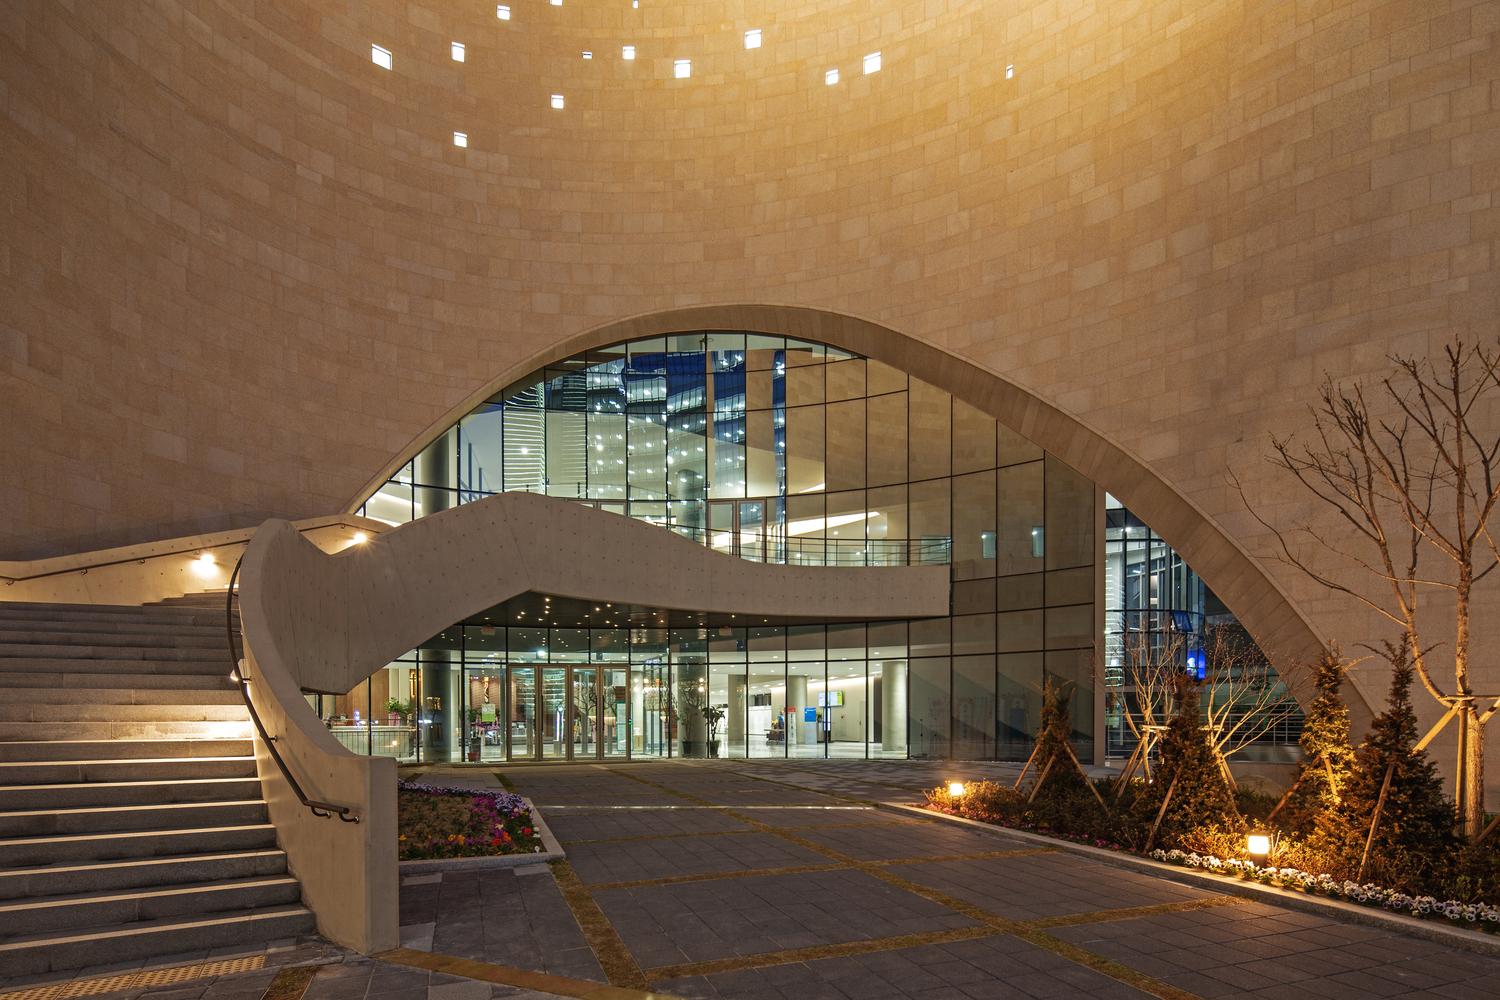 首爾現代化教堂設計 擴展文化空間 鼓勵開放交流